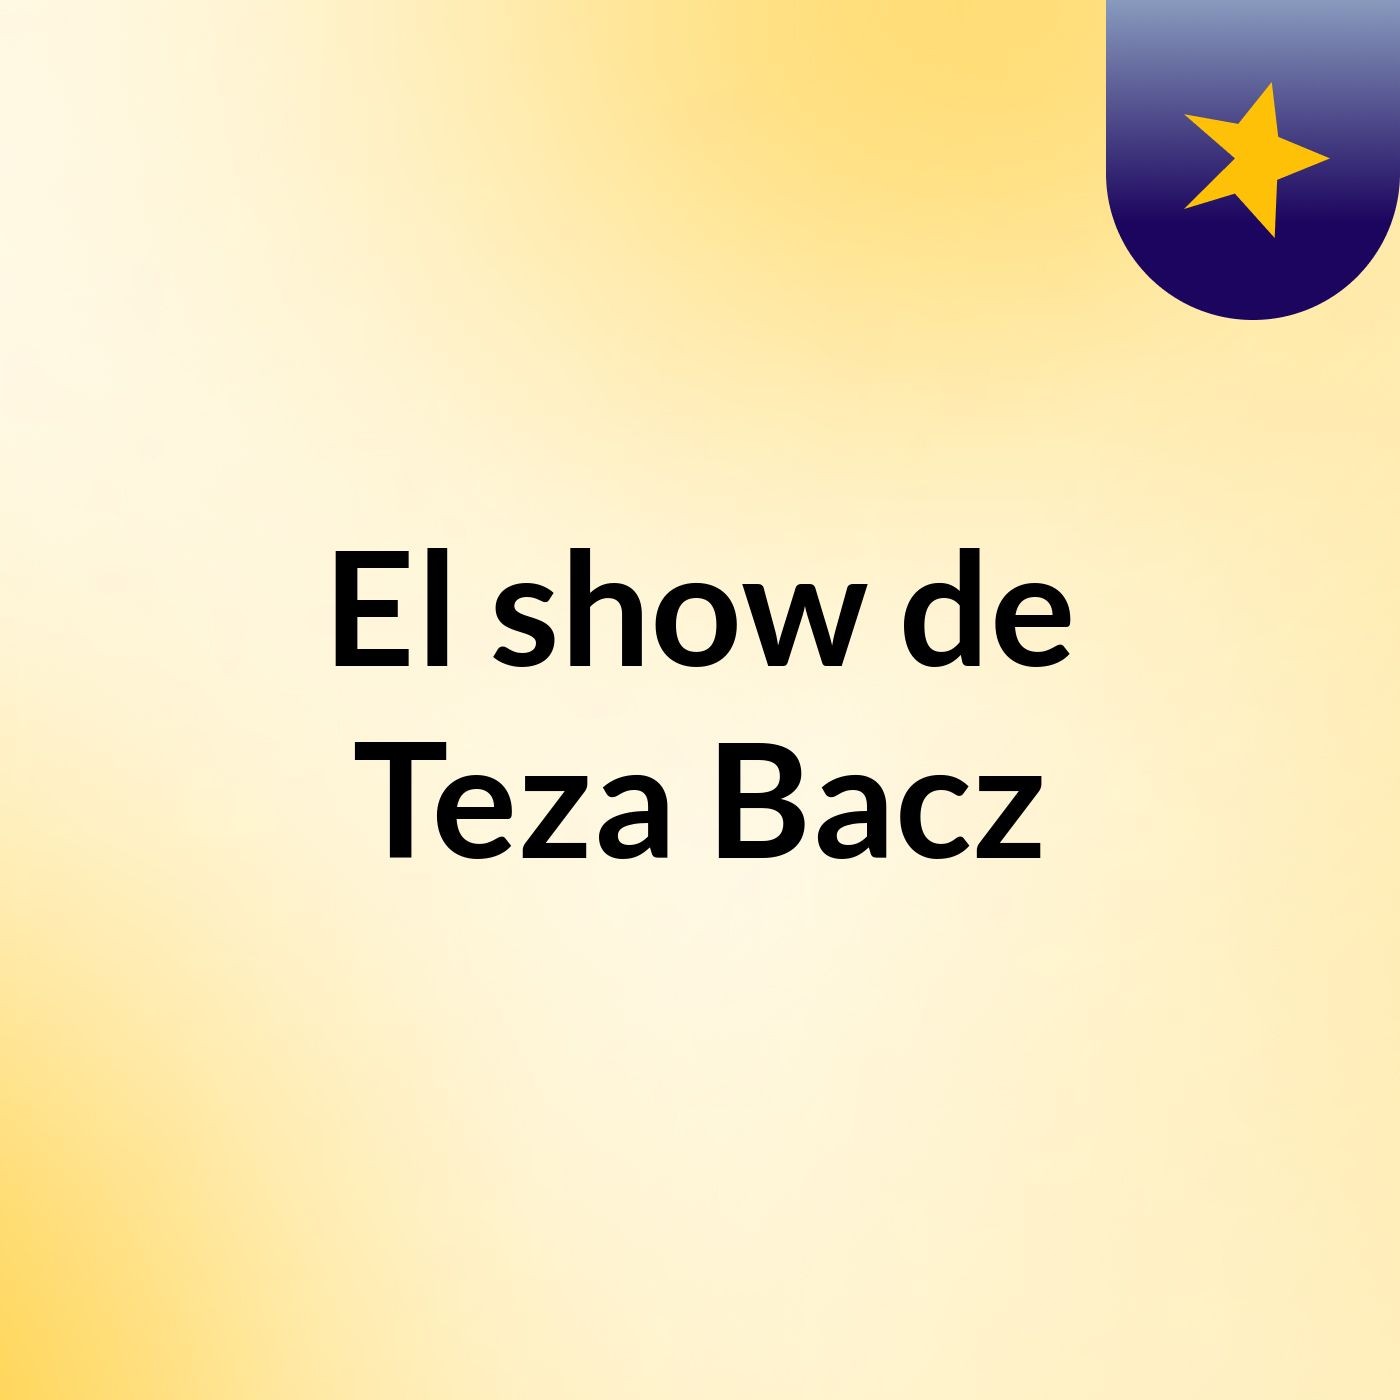 Episodio 7 - El show de Teza Bacz